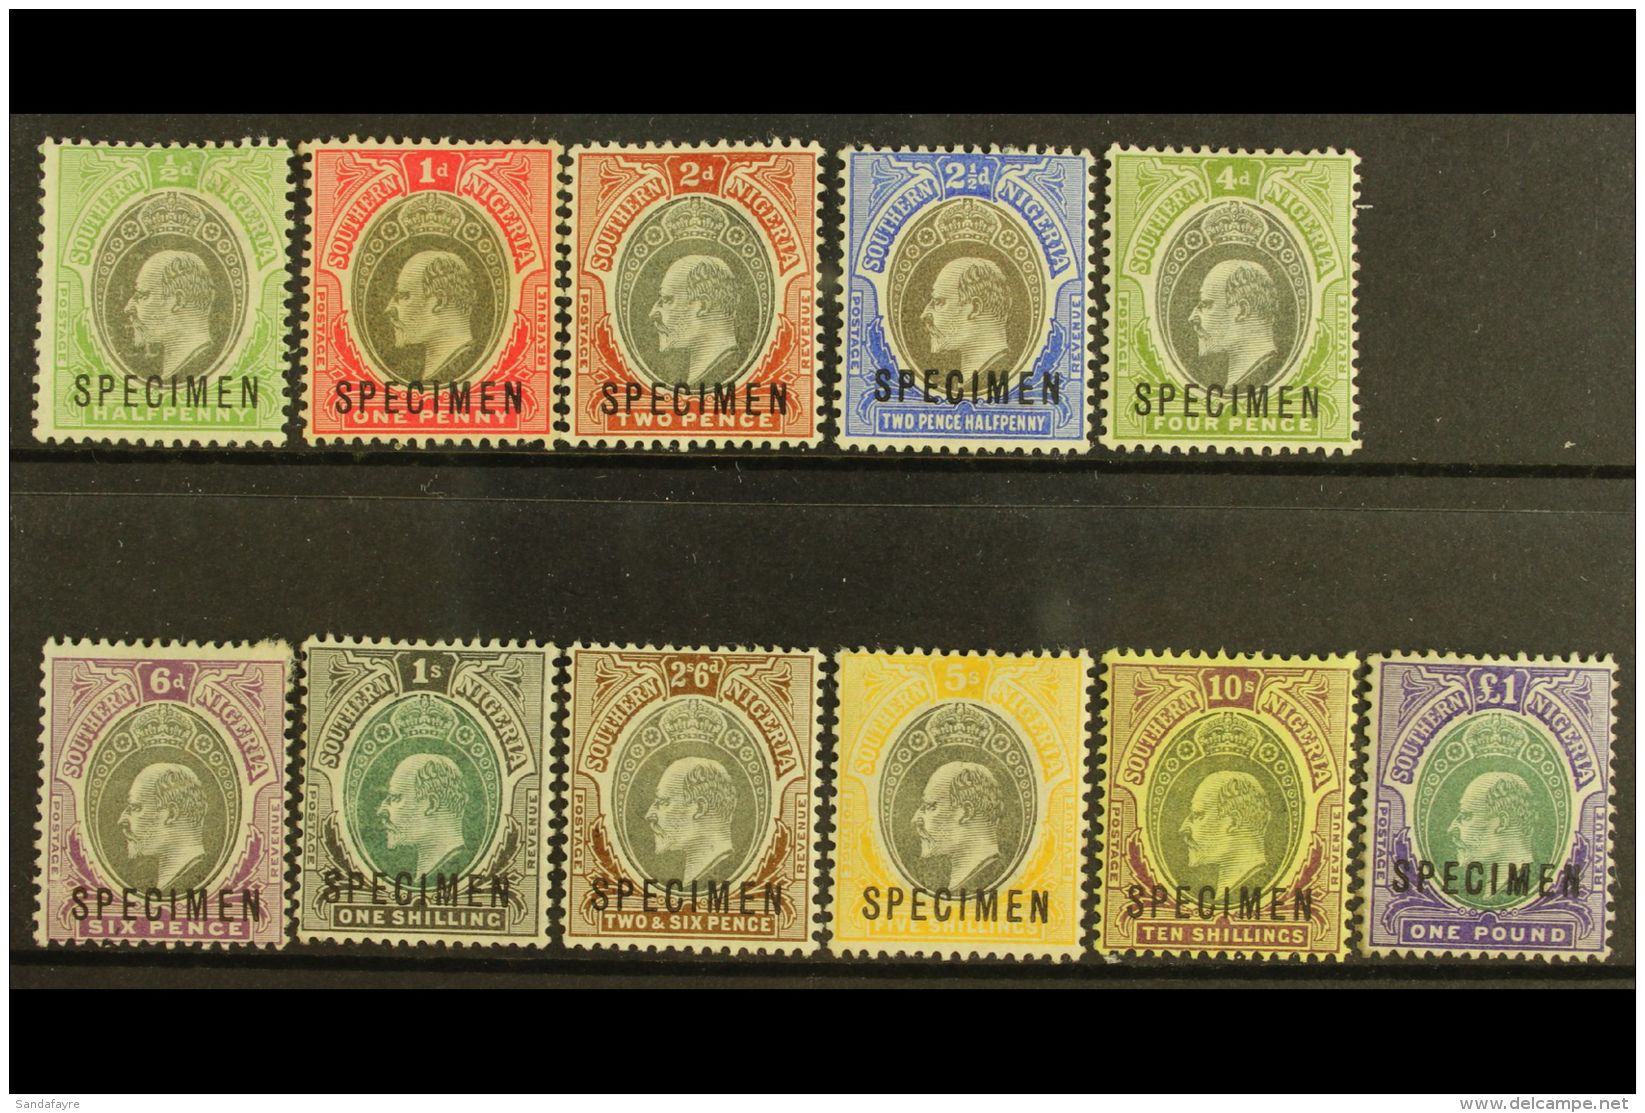 1903-04 Definitives Set Complete Overprinted "SPECIMEN", SG 10s/20s, Fine Mint (11 Stamps) For More Images, Please... - Nigeria (...-1960)